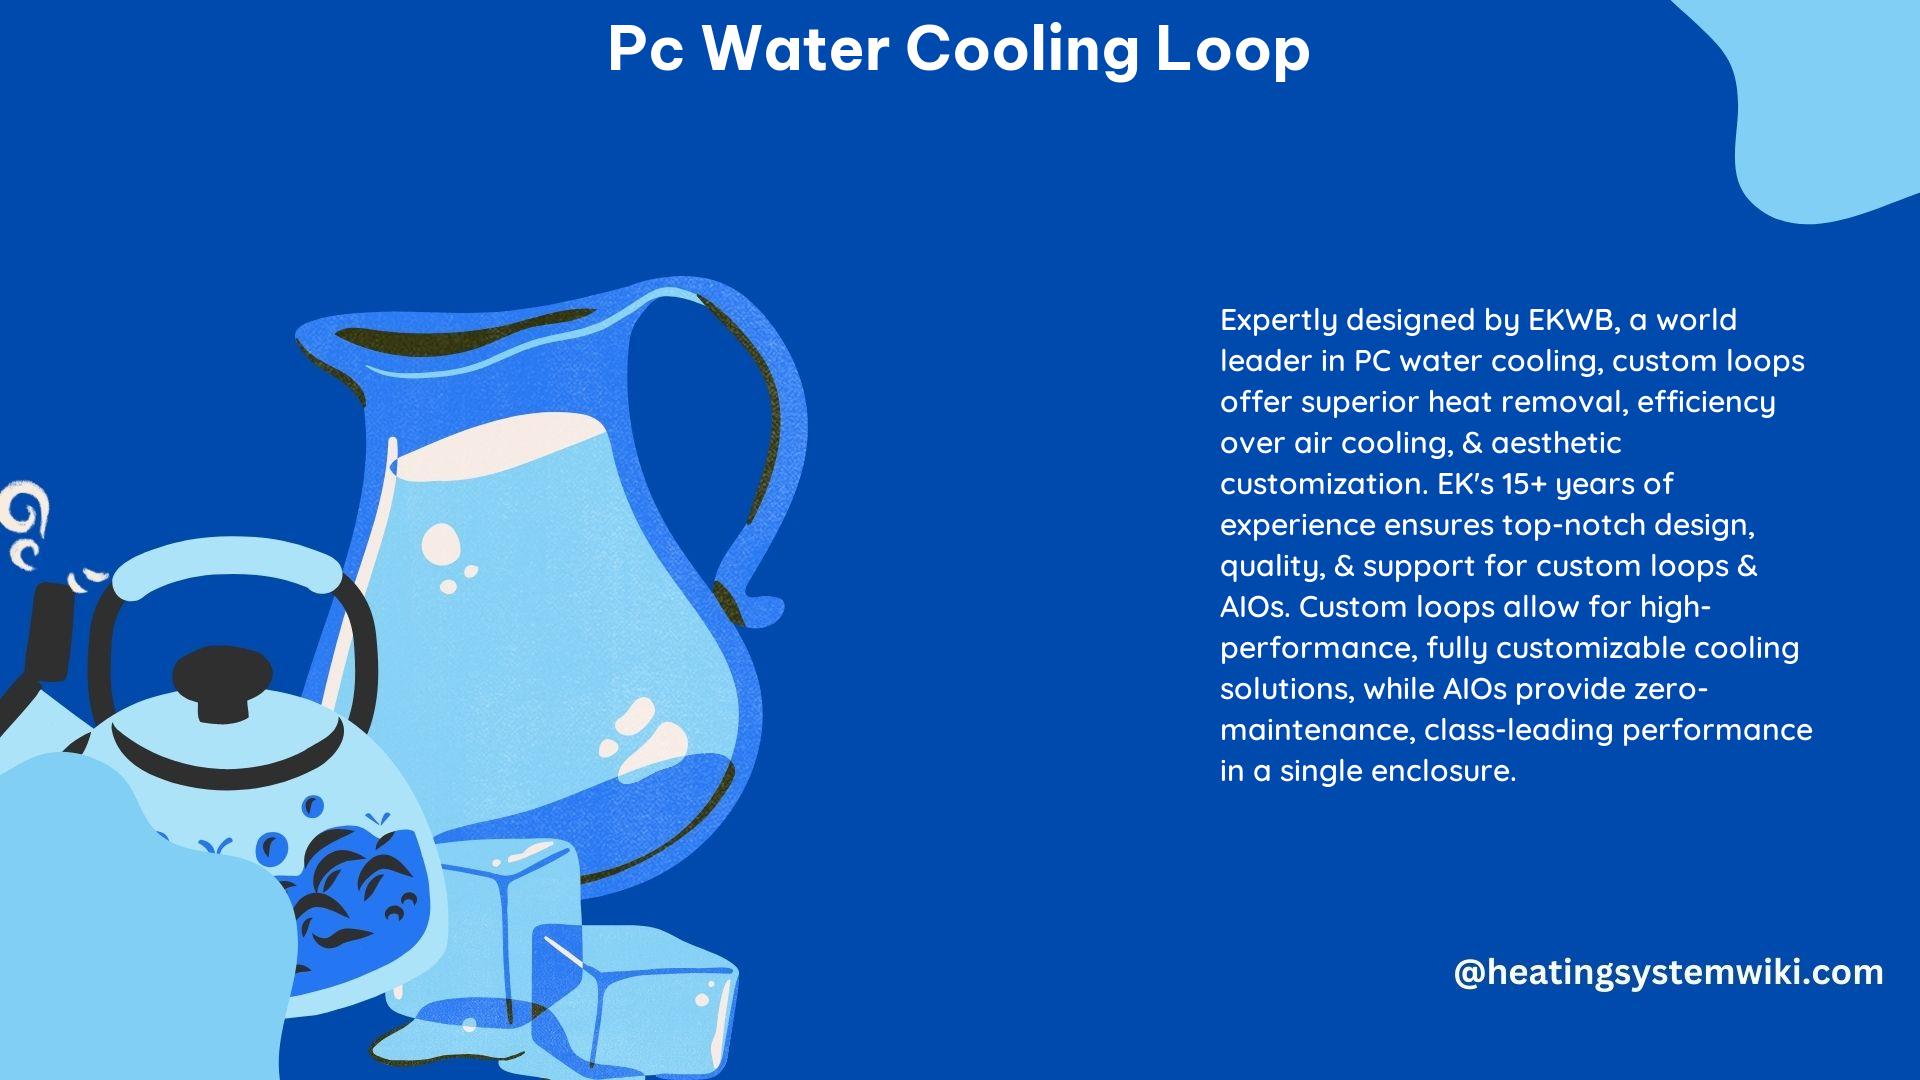 PC Water Cooling Loop